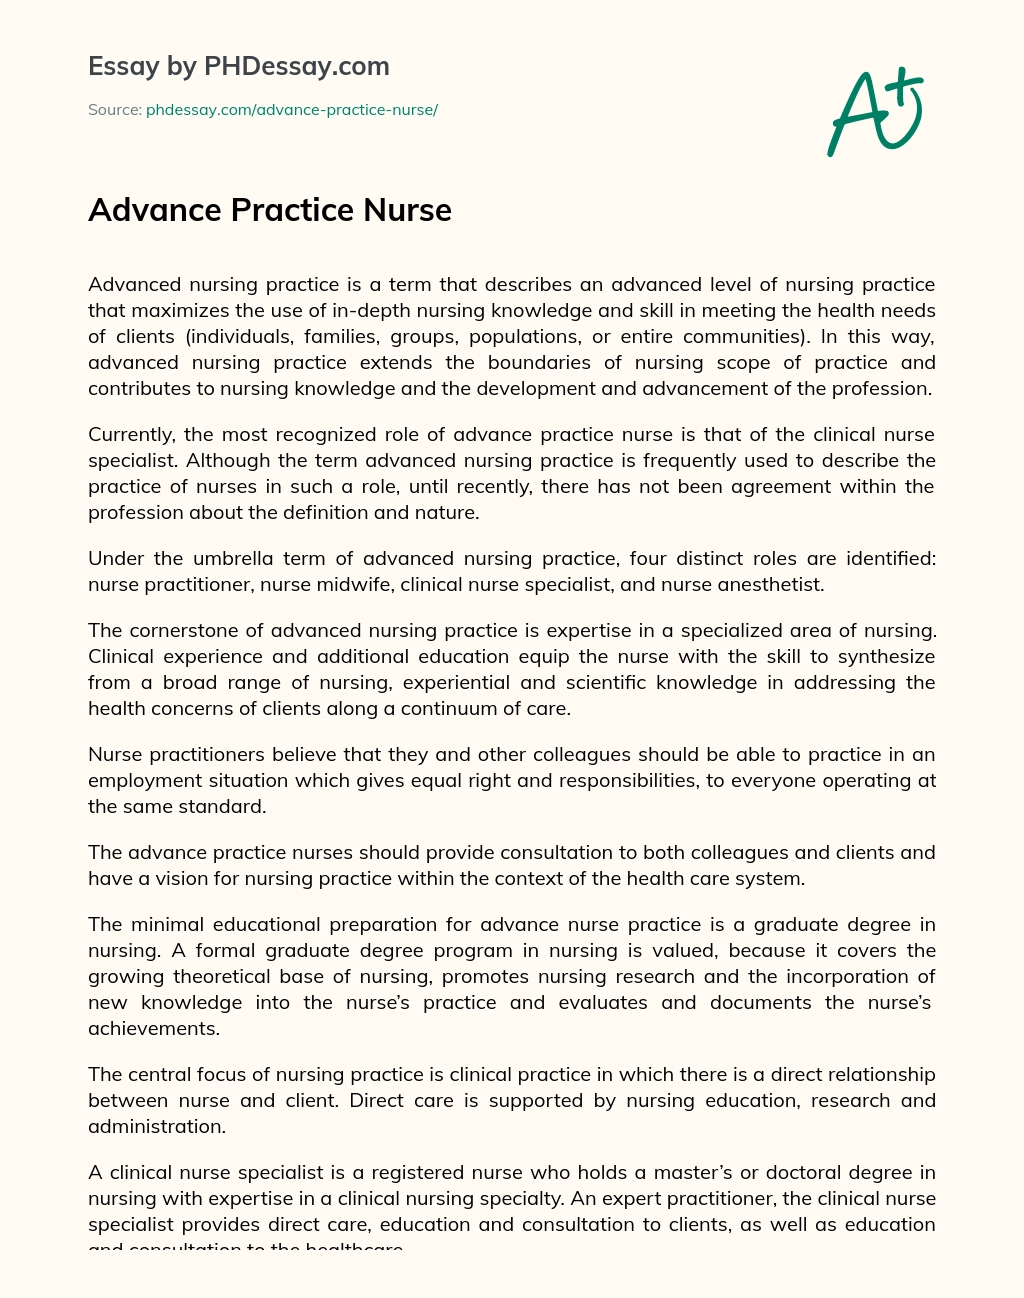 Advance Practice Nurse essay